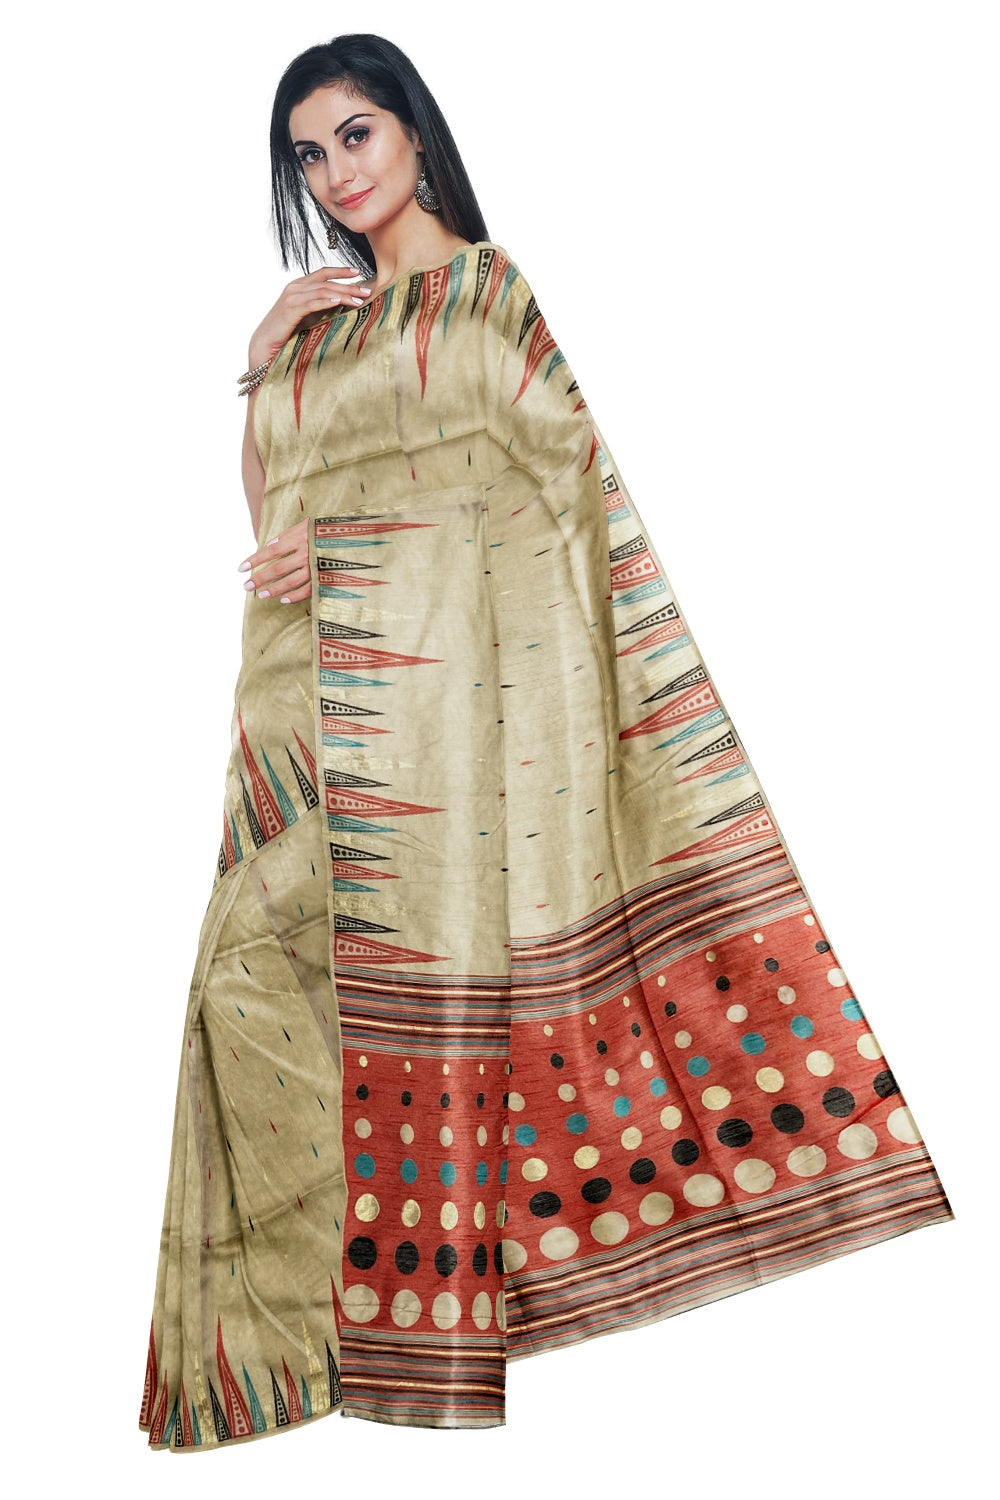 Southloom Tussar Thread Work Beige Designer Saree with Red Pallu